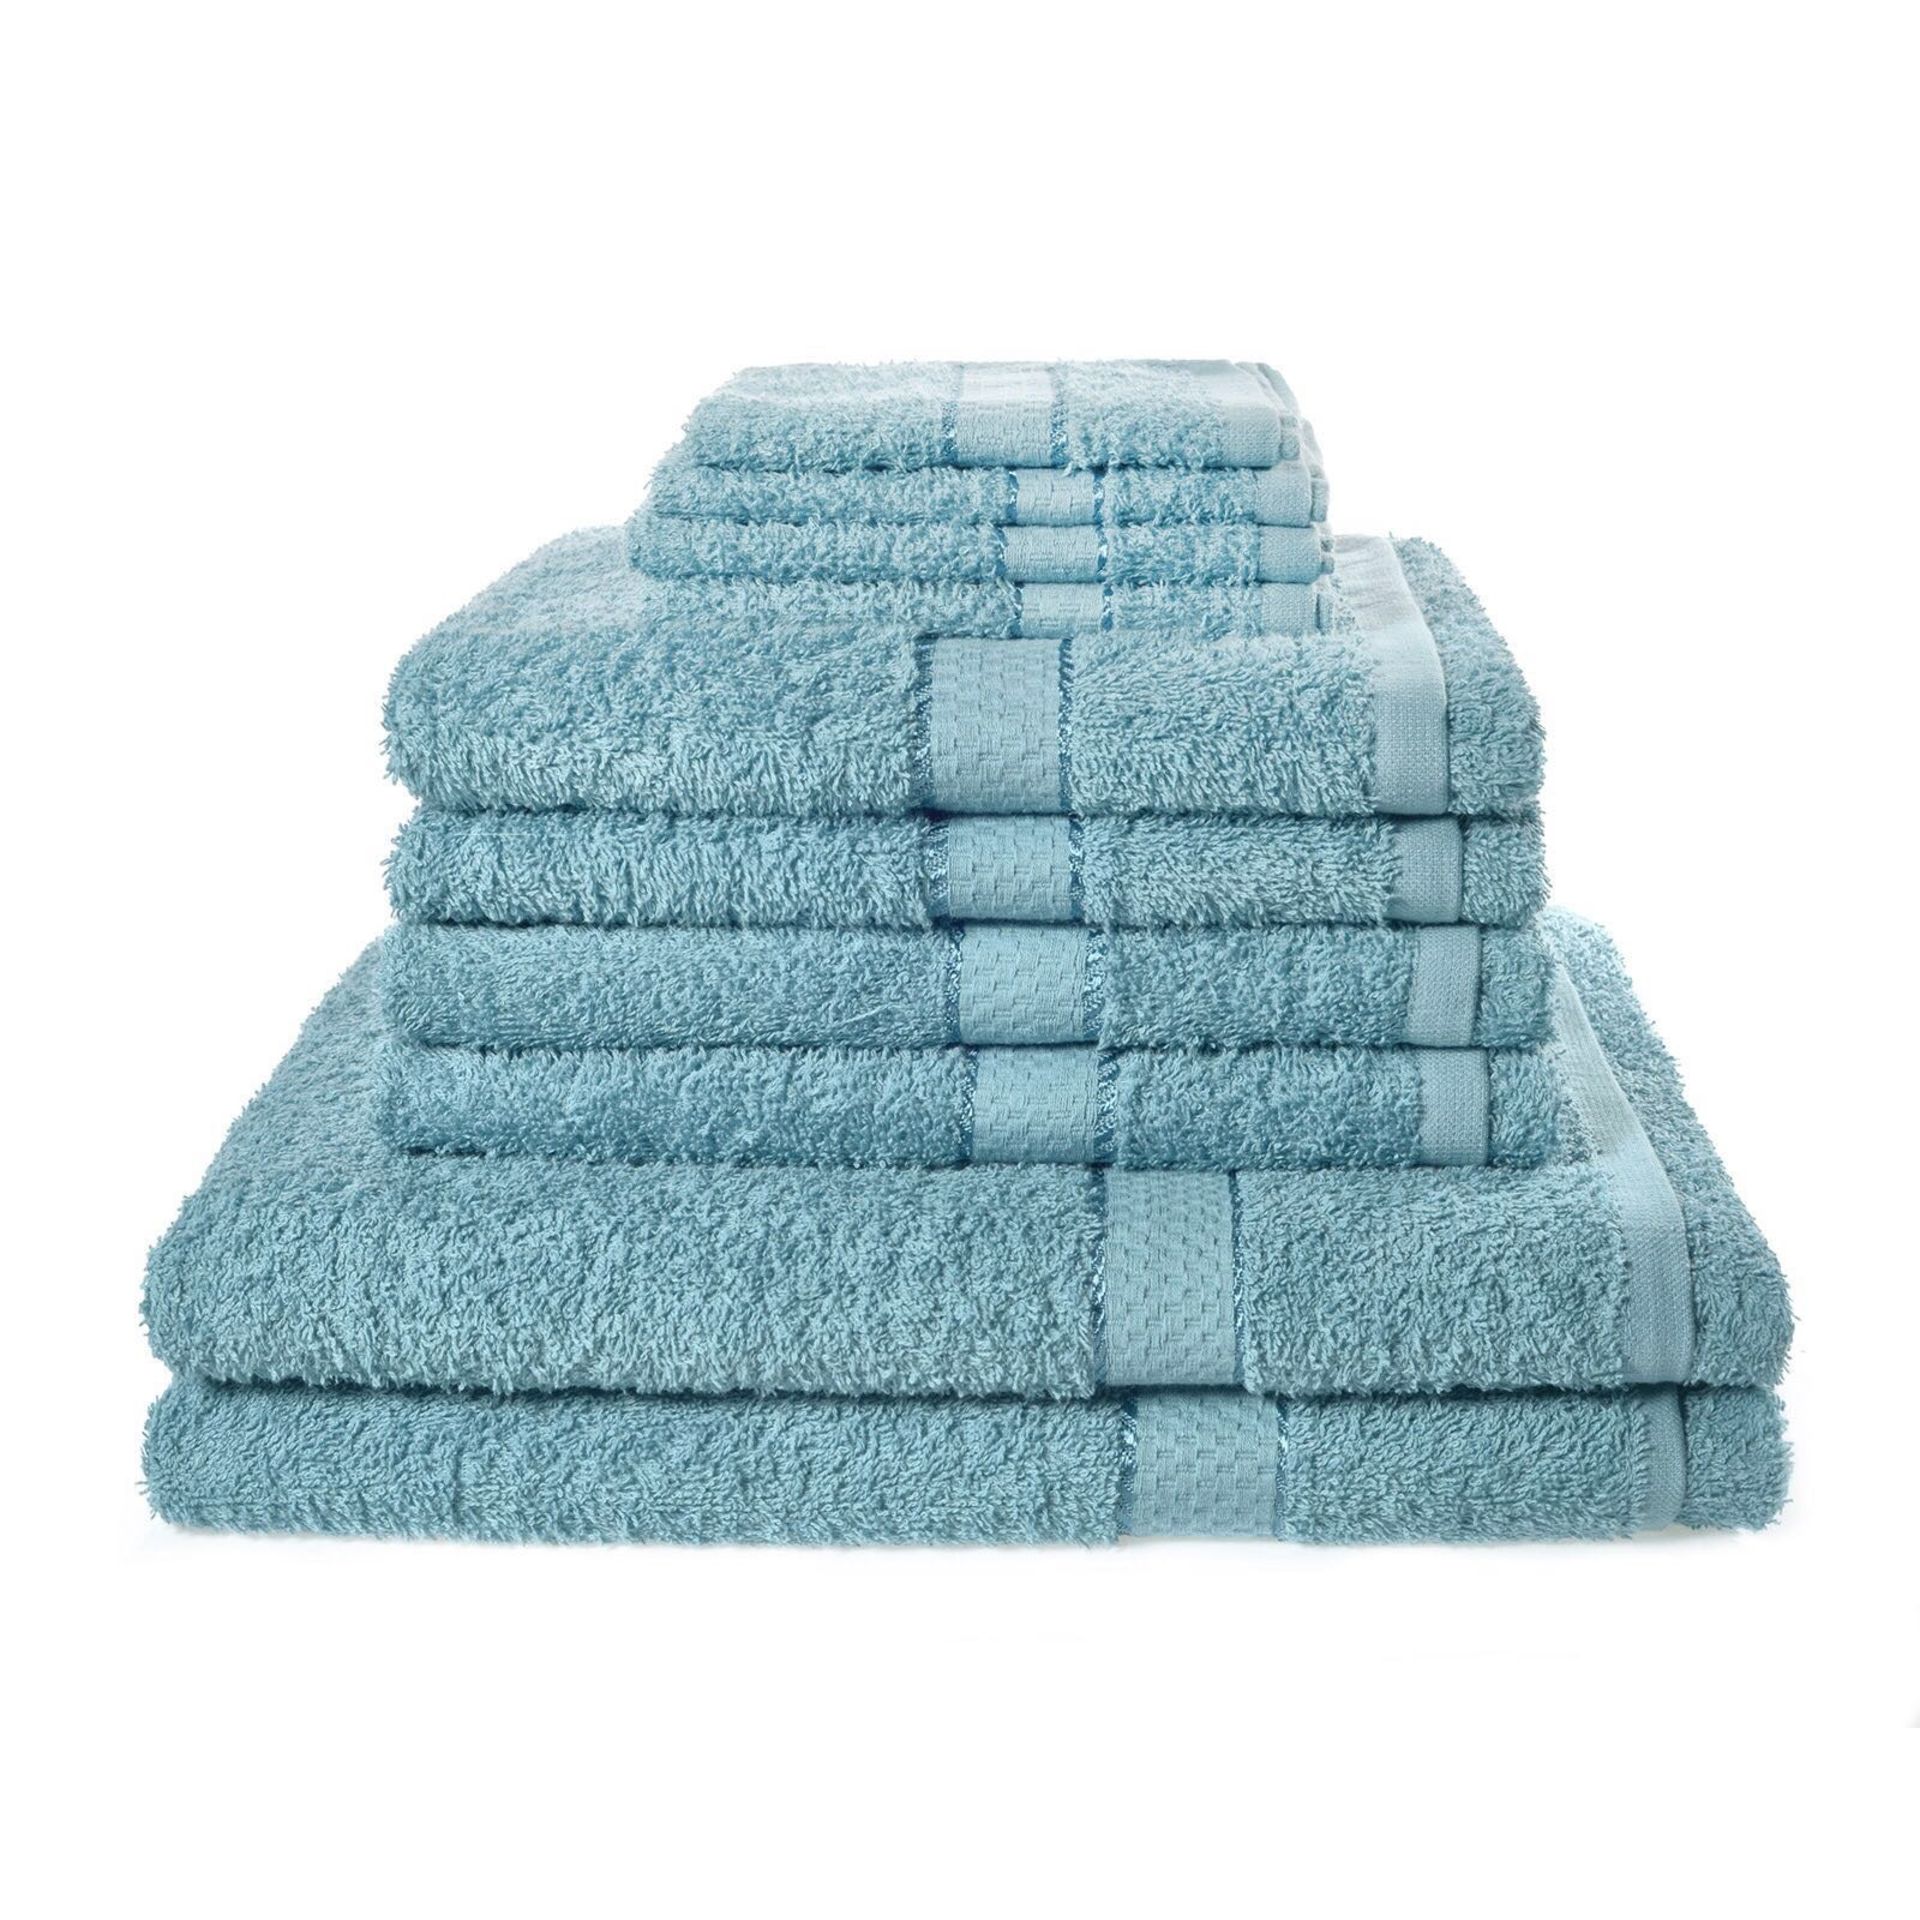 V *TRADE QTY* Brand New Luxury 10 Piece Aqua Towel Bale Set Including 4 Face Cloths - 4 Hand